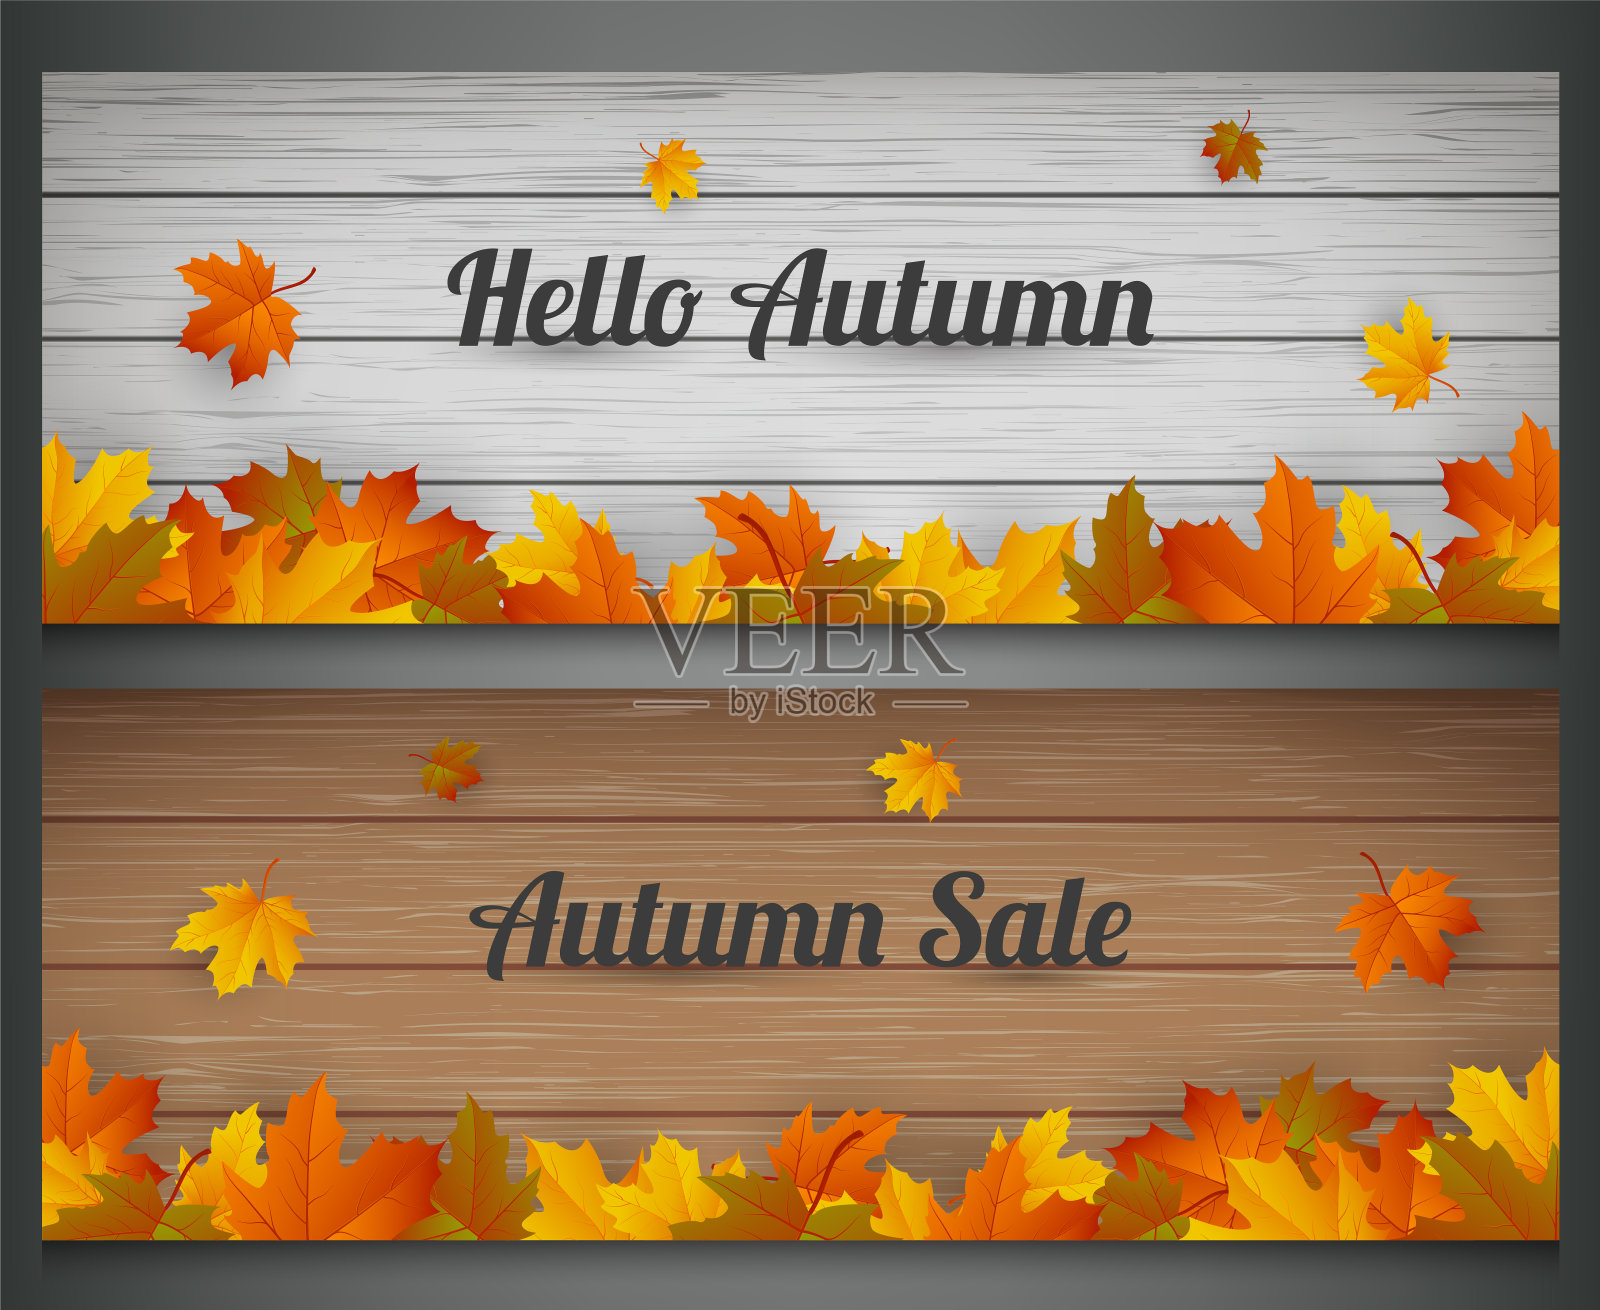 秋天的横幅。秋天出售。背景与落叶。向量设计元素图片